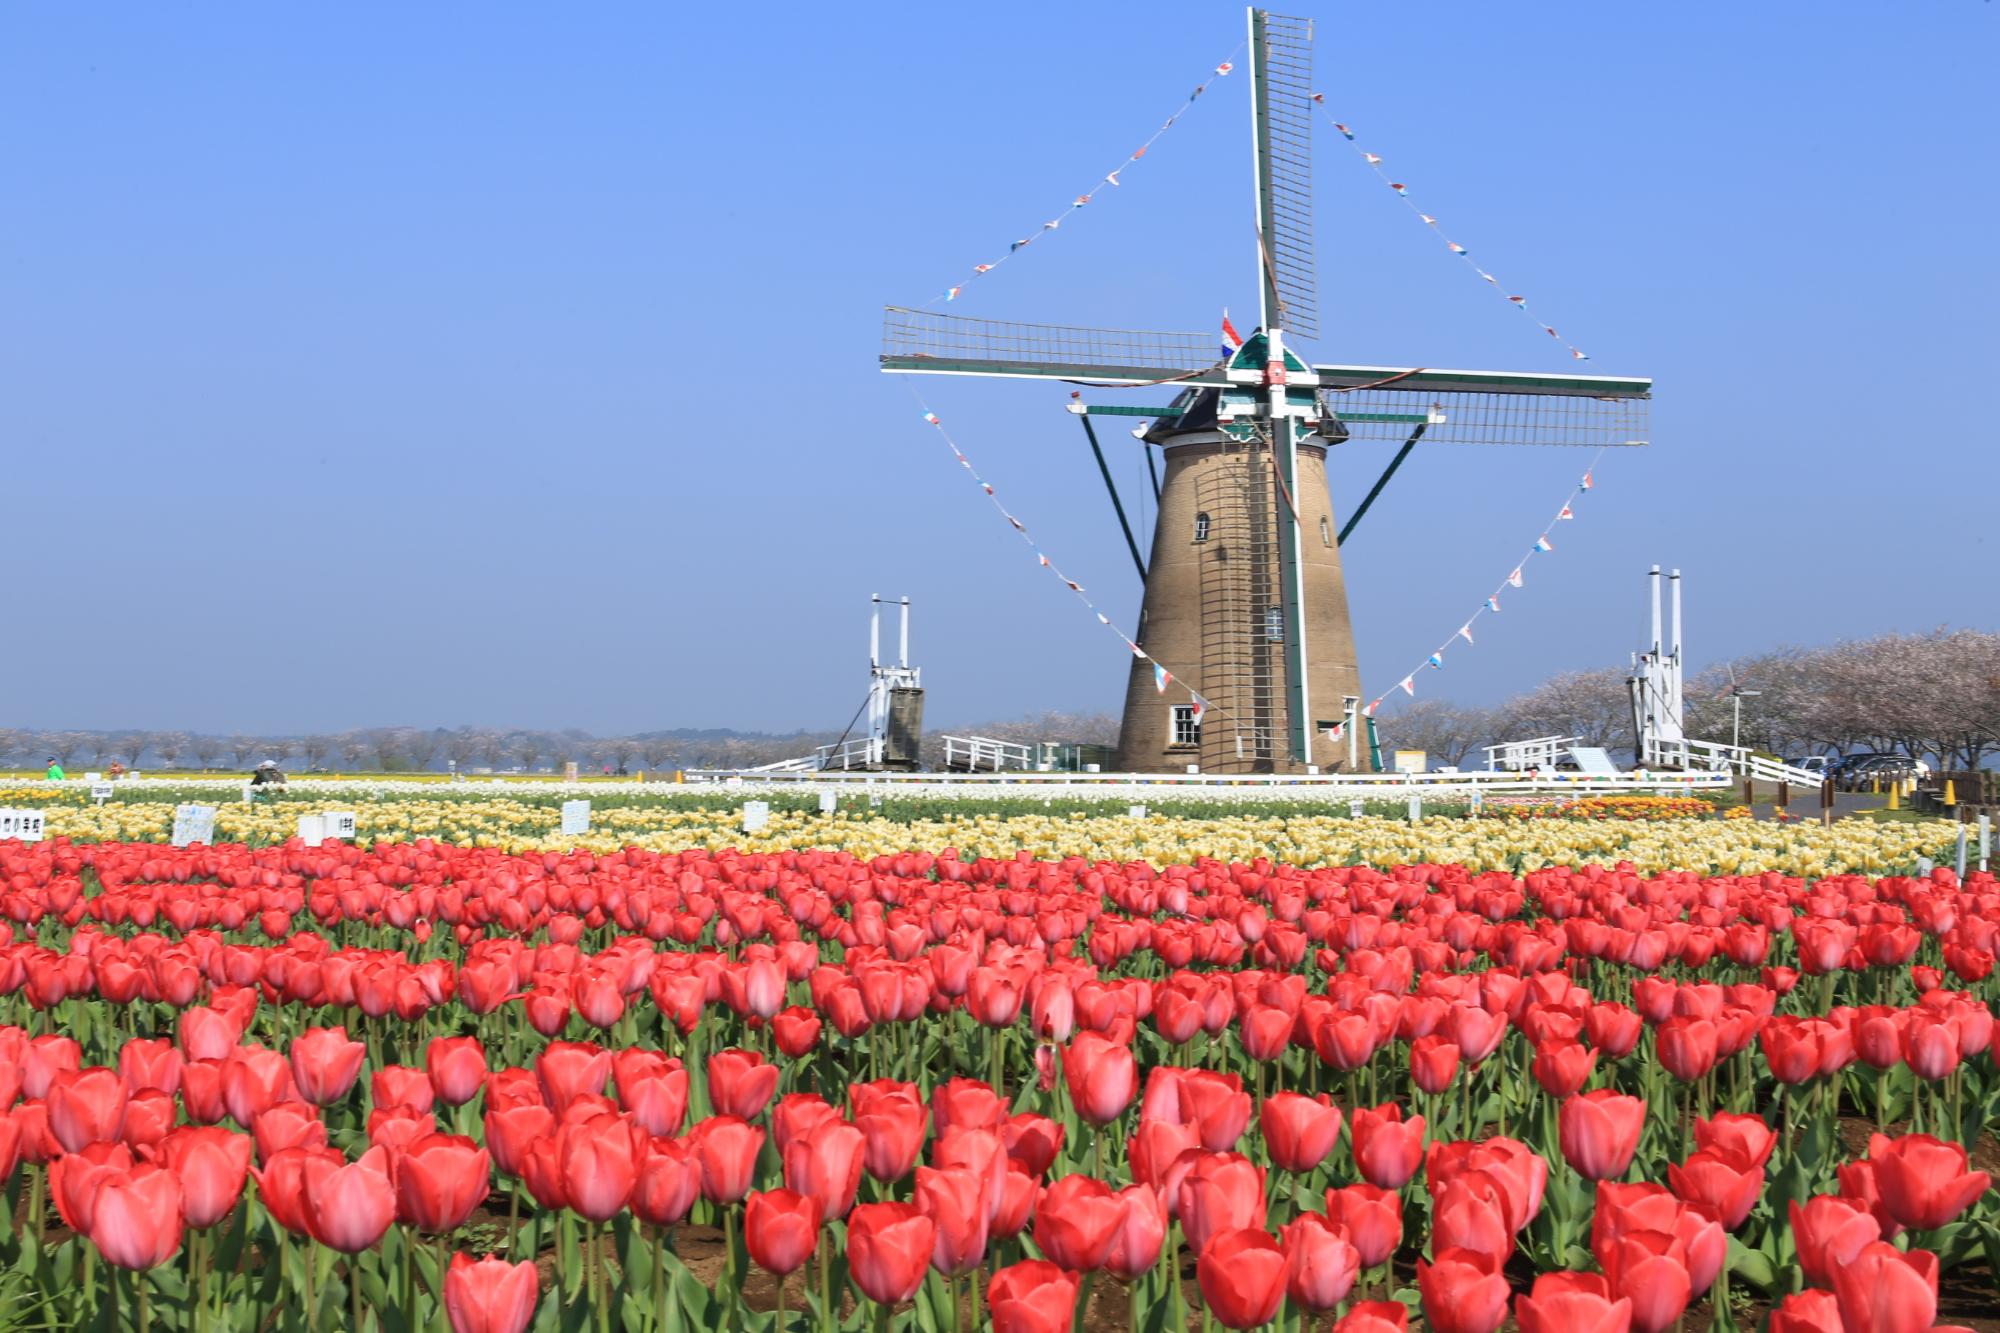 佐倉ふるさと広場の赤いチューリップが咲き誇るオランダ風庭園と風車の写真